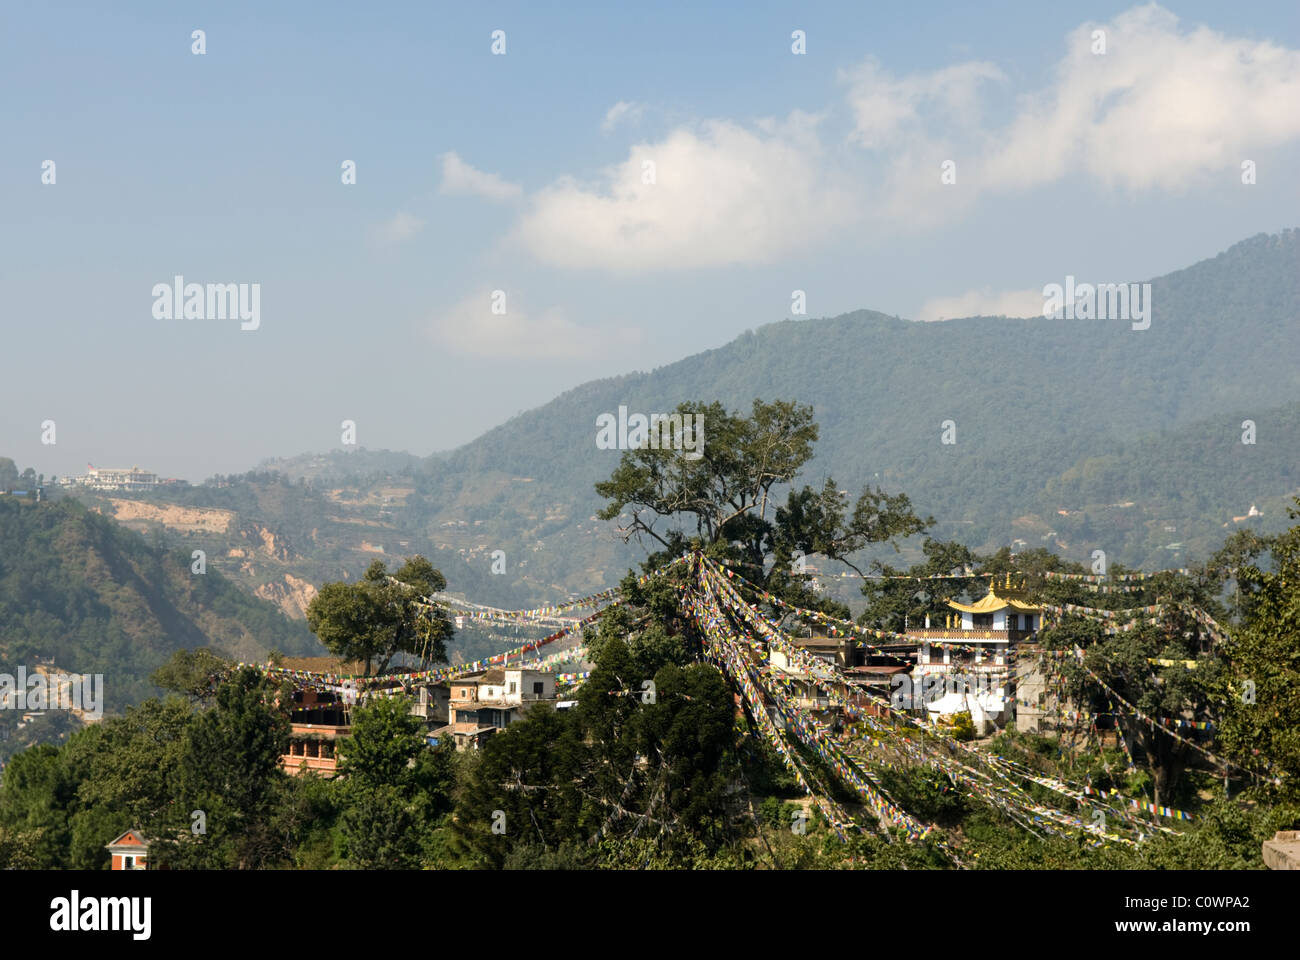 View of monasteries from Swayambhunath, Kathmandu, Nepal. Stock Photo